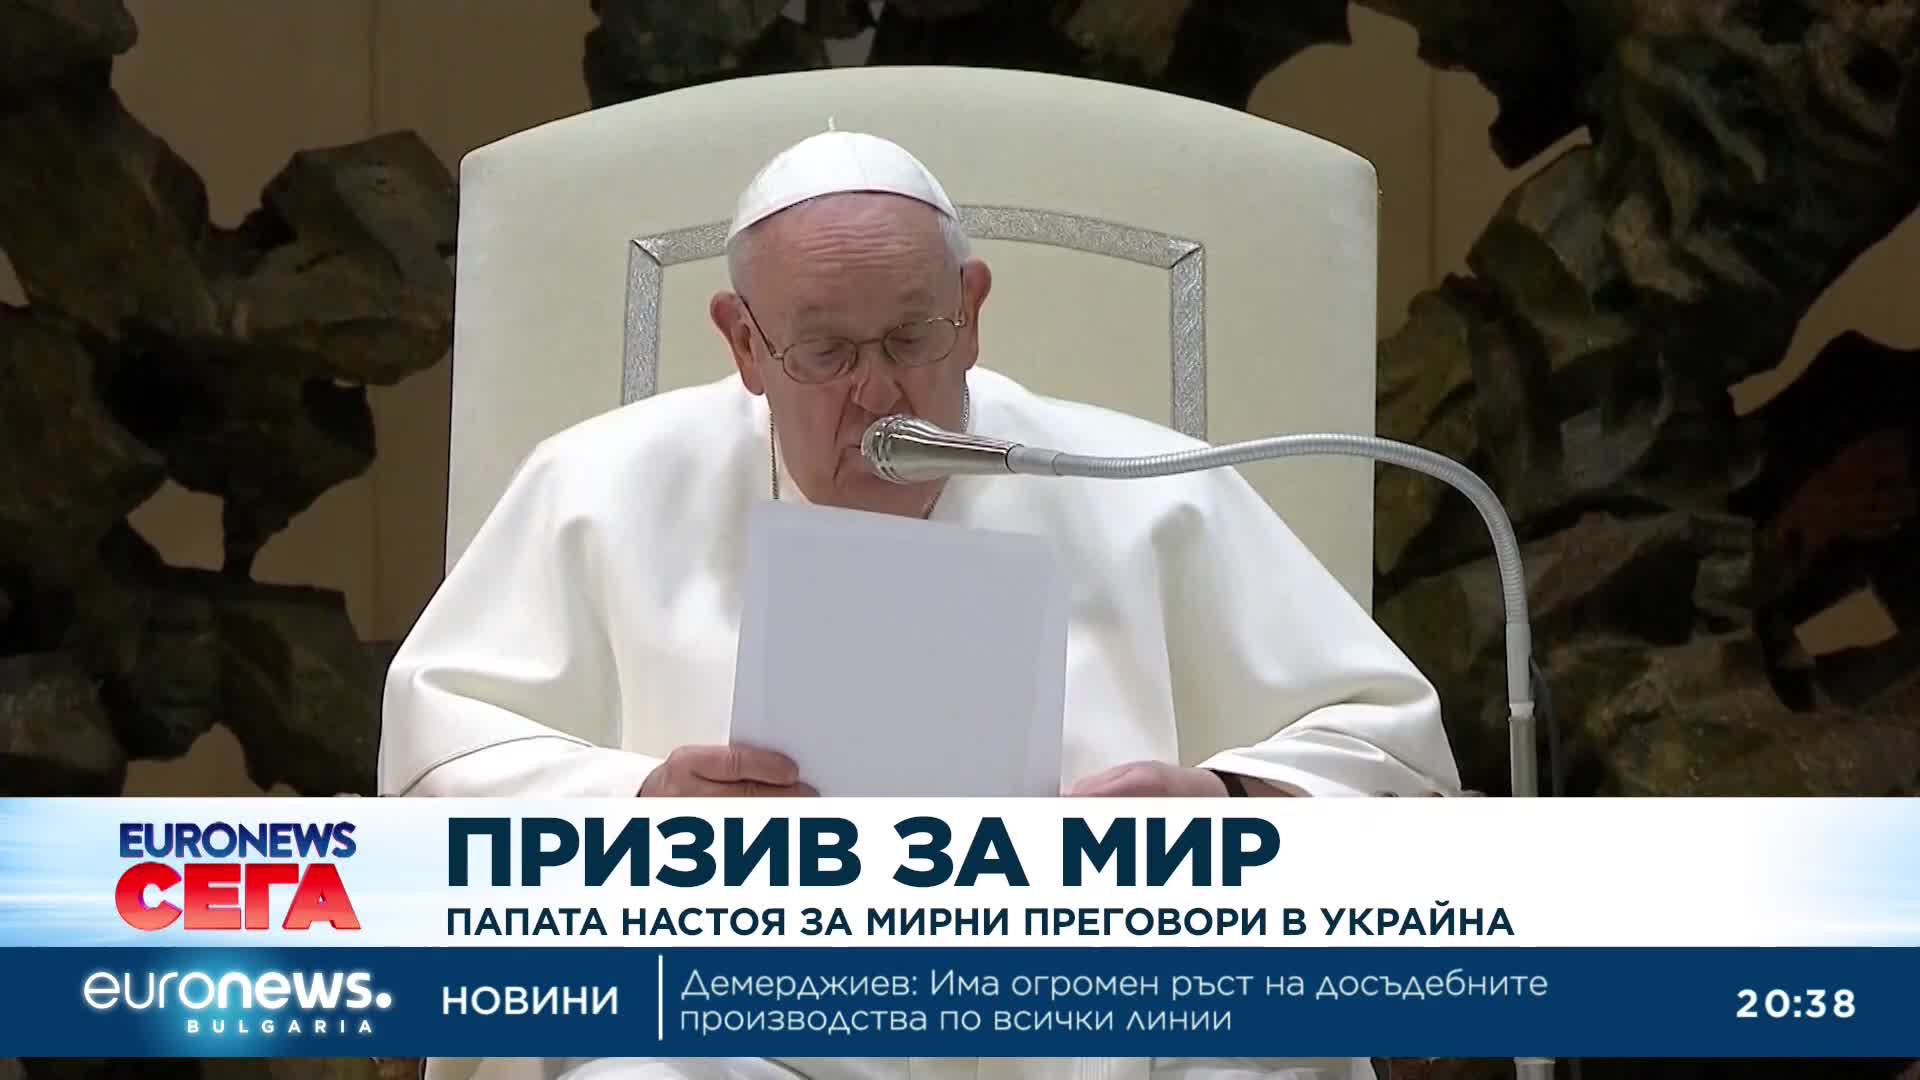 Папата настоя за мирни преговори в Украйна